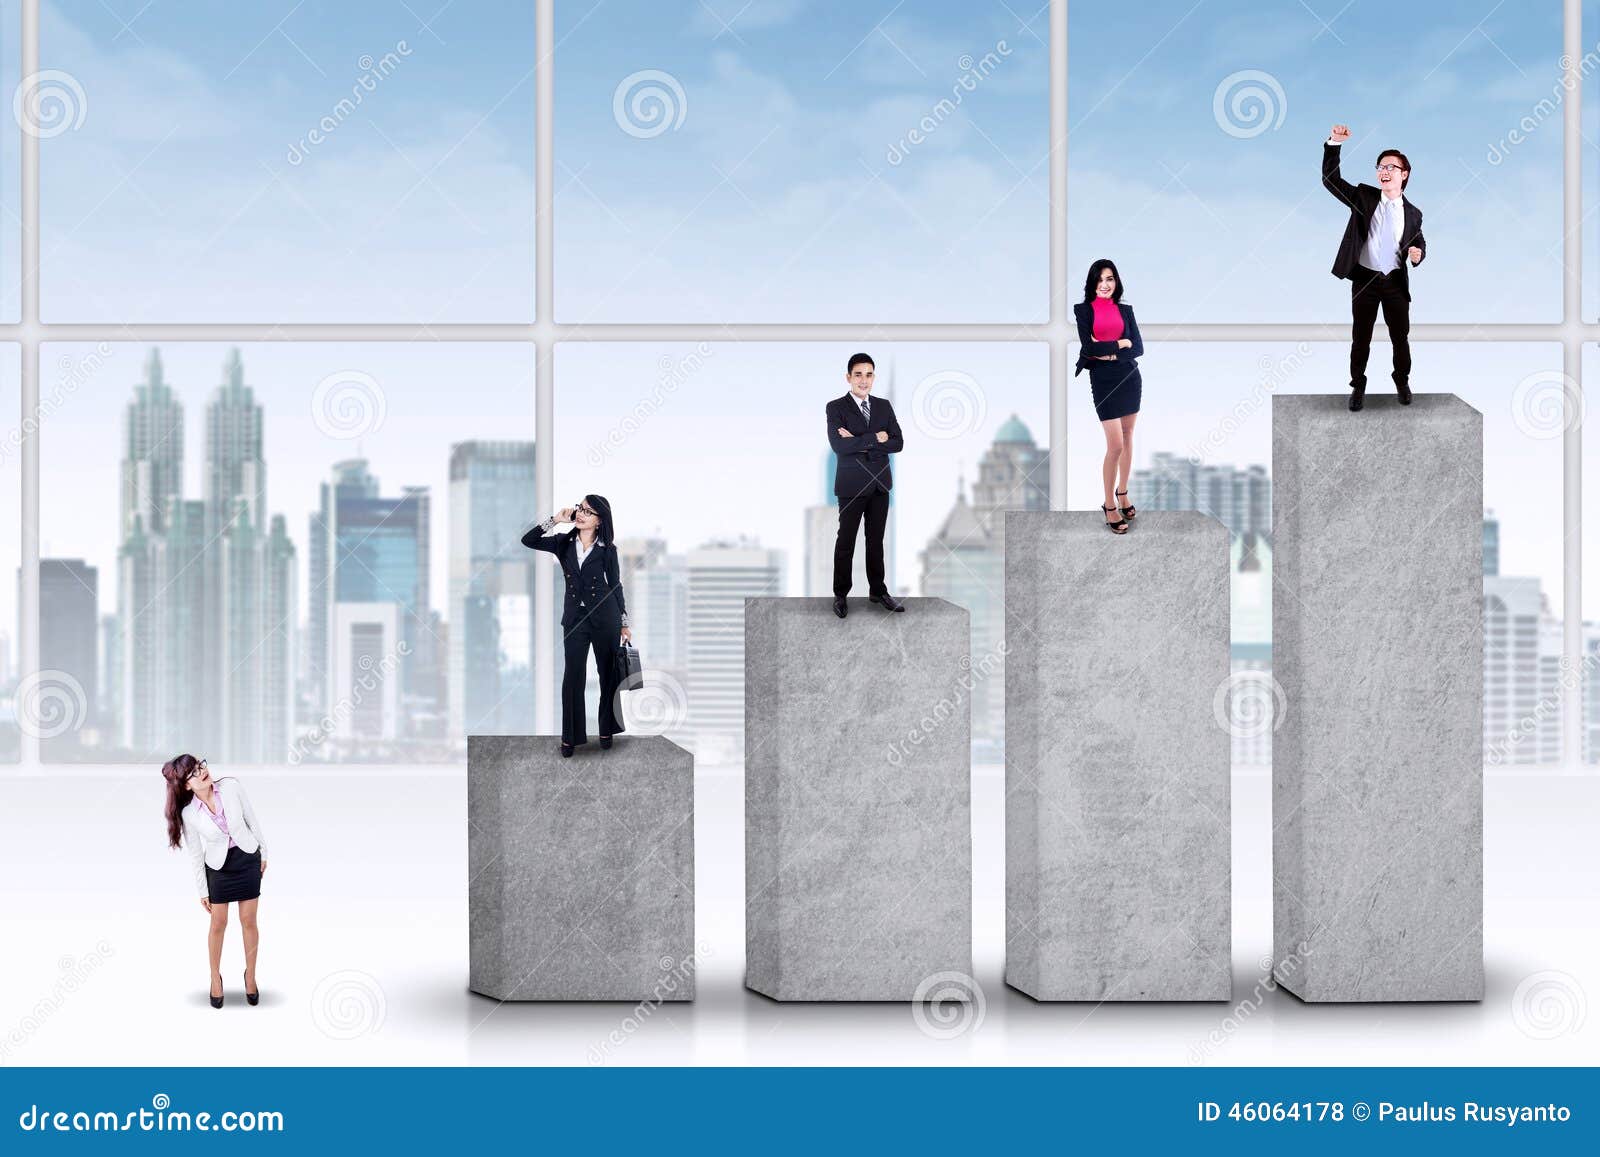 entrepreneurs standing on the ranking bars